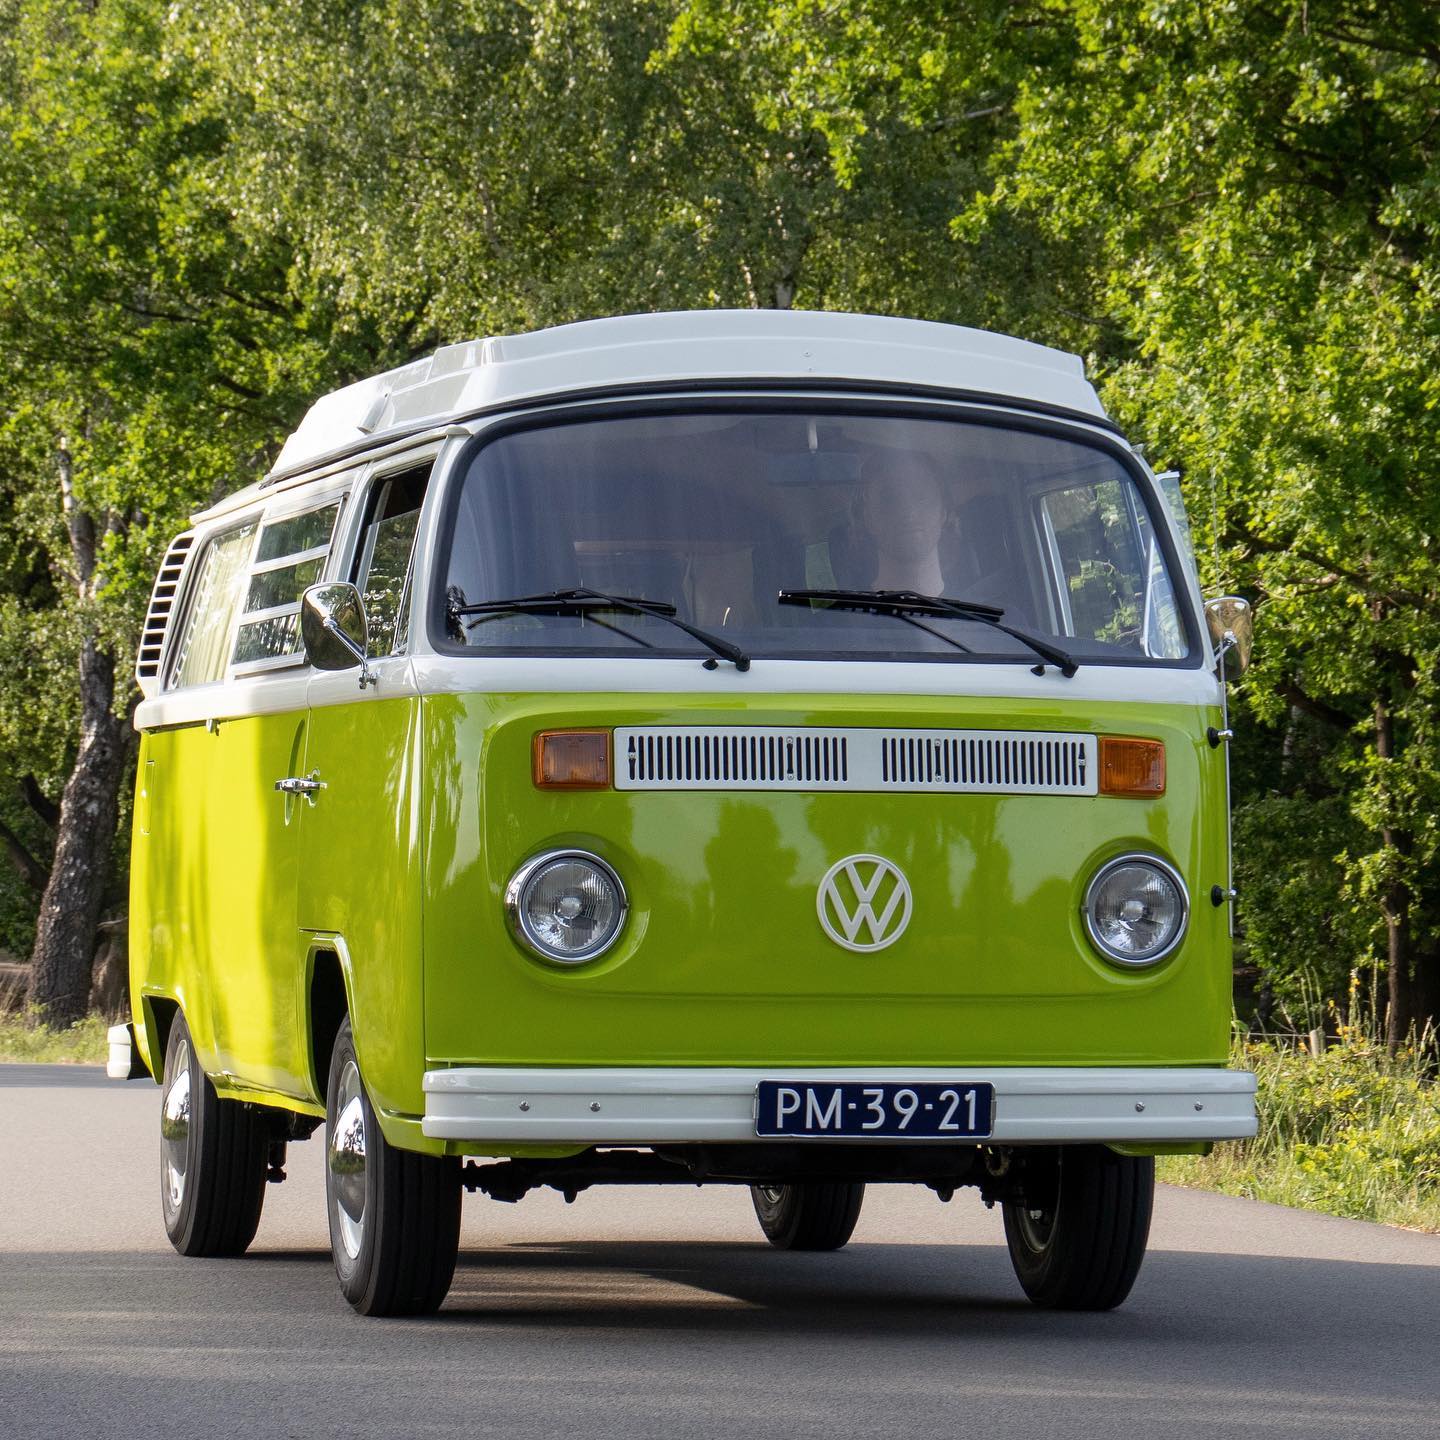 BREAKING NEWS 😍 Ons nieuwe Volkswagen T2 busje Fred is klaar en kan vanaf NU geboekt worden op onze website! 🎉🥳 En voor wie bij Oscar achter het net viste (of gewoon te laat was met boeken): dit busje heeft nog niks in de agenda staan. Lekker veel keuze dus! 😀
.
#bijzonderebusjes #westervoort #camper #volkswagen #vwbus #kamperen #bijzonderecamping #origineelovernachten #oldtimer #avontuur #posbank #vwoldtimer #veluwe #volkswagencamper #volkswagenbusje #volkswagenbus #camperhuren #kamperenmetkinderen #weekendjeweg #weekendjewegineigenland #bijzonderplekje #retrobusje #vakantiemetkinderen #kampereninnederland #westfalia #vwbusje #vwt2 #zomervakantie #natuurcamping #natuurkampeerterrein